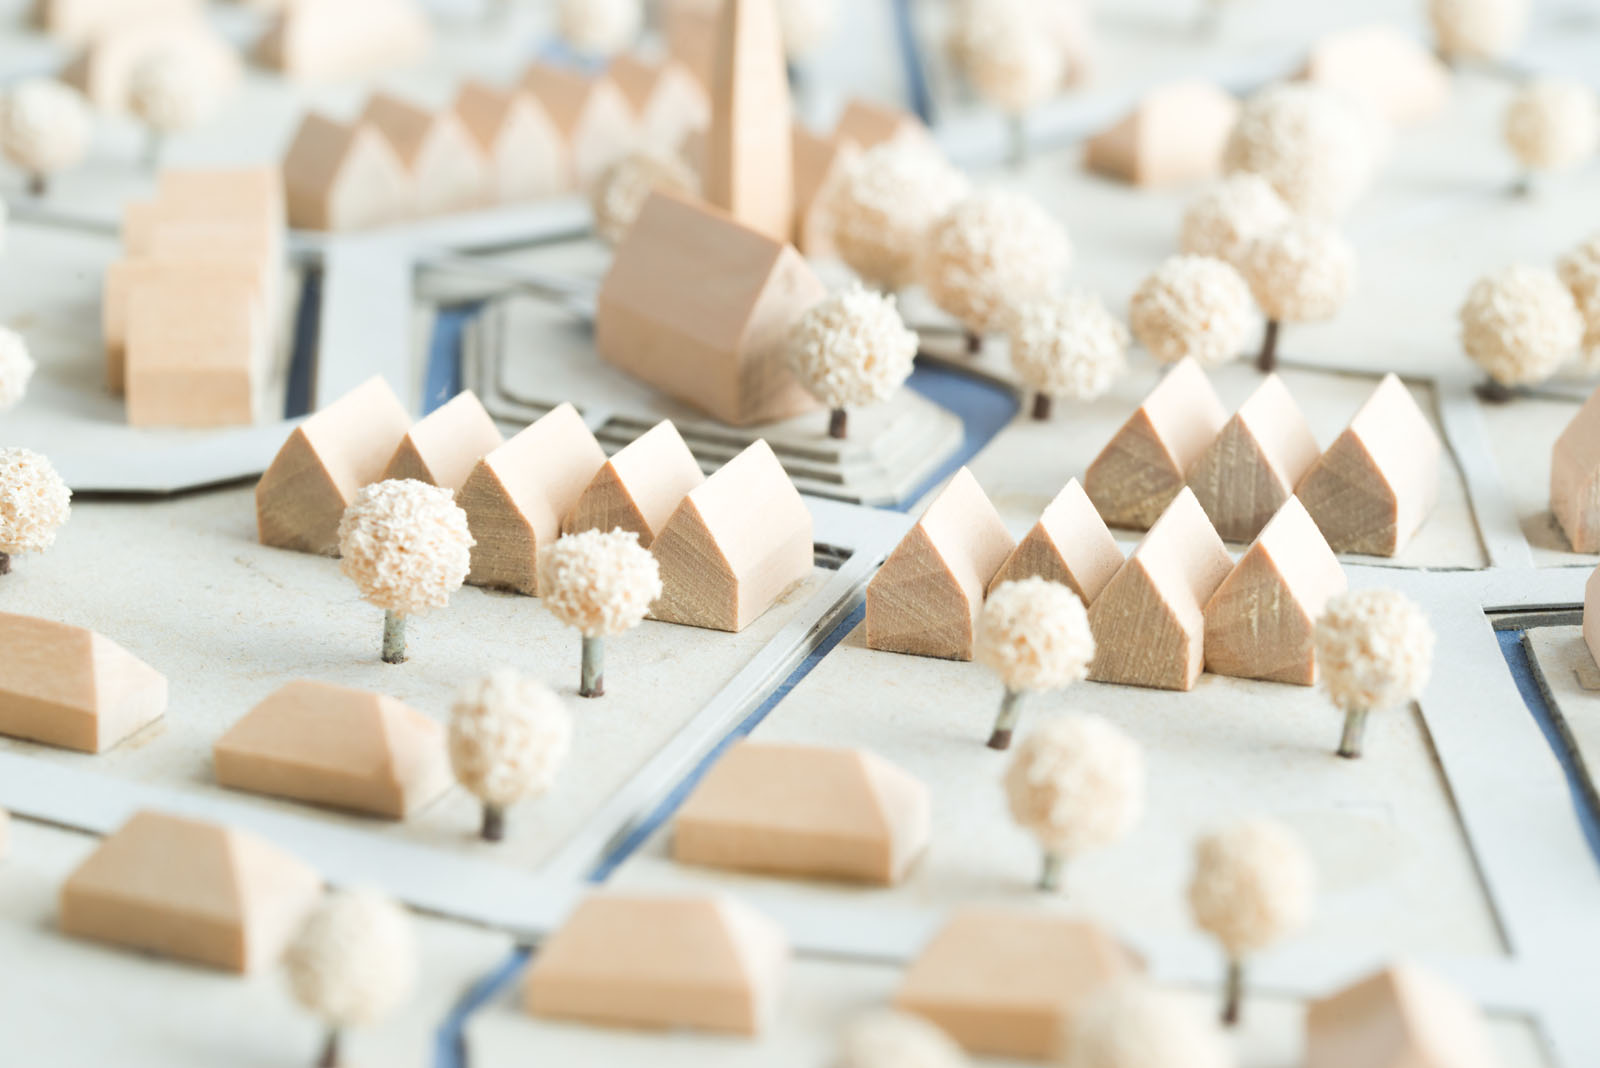 Städtebauliches Modell aus Holz und Karton mit Weißen Bäumen